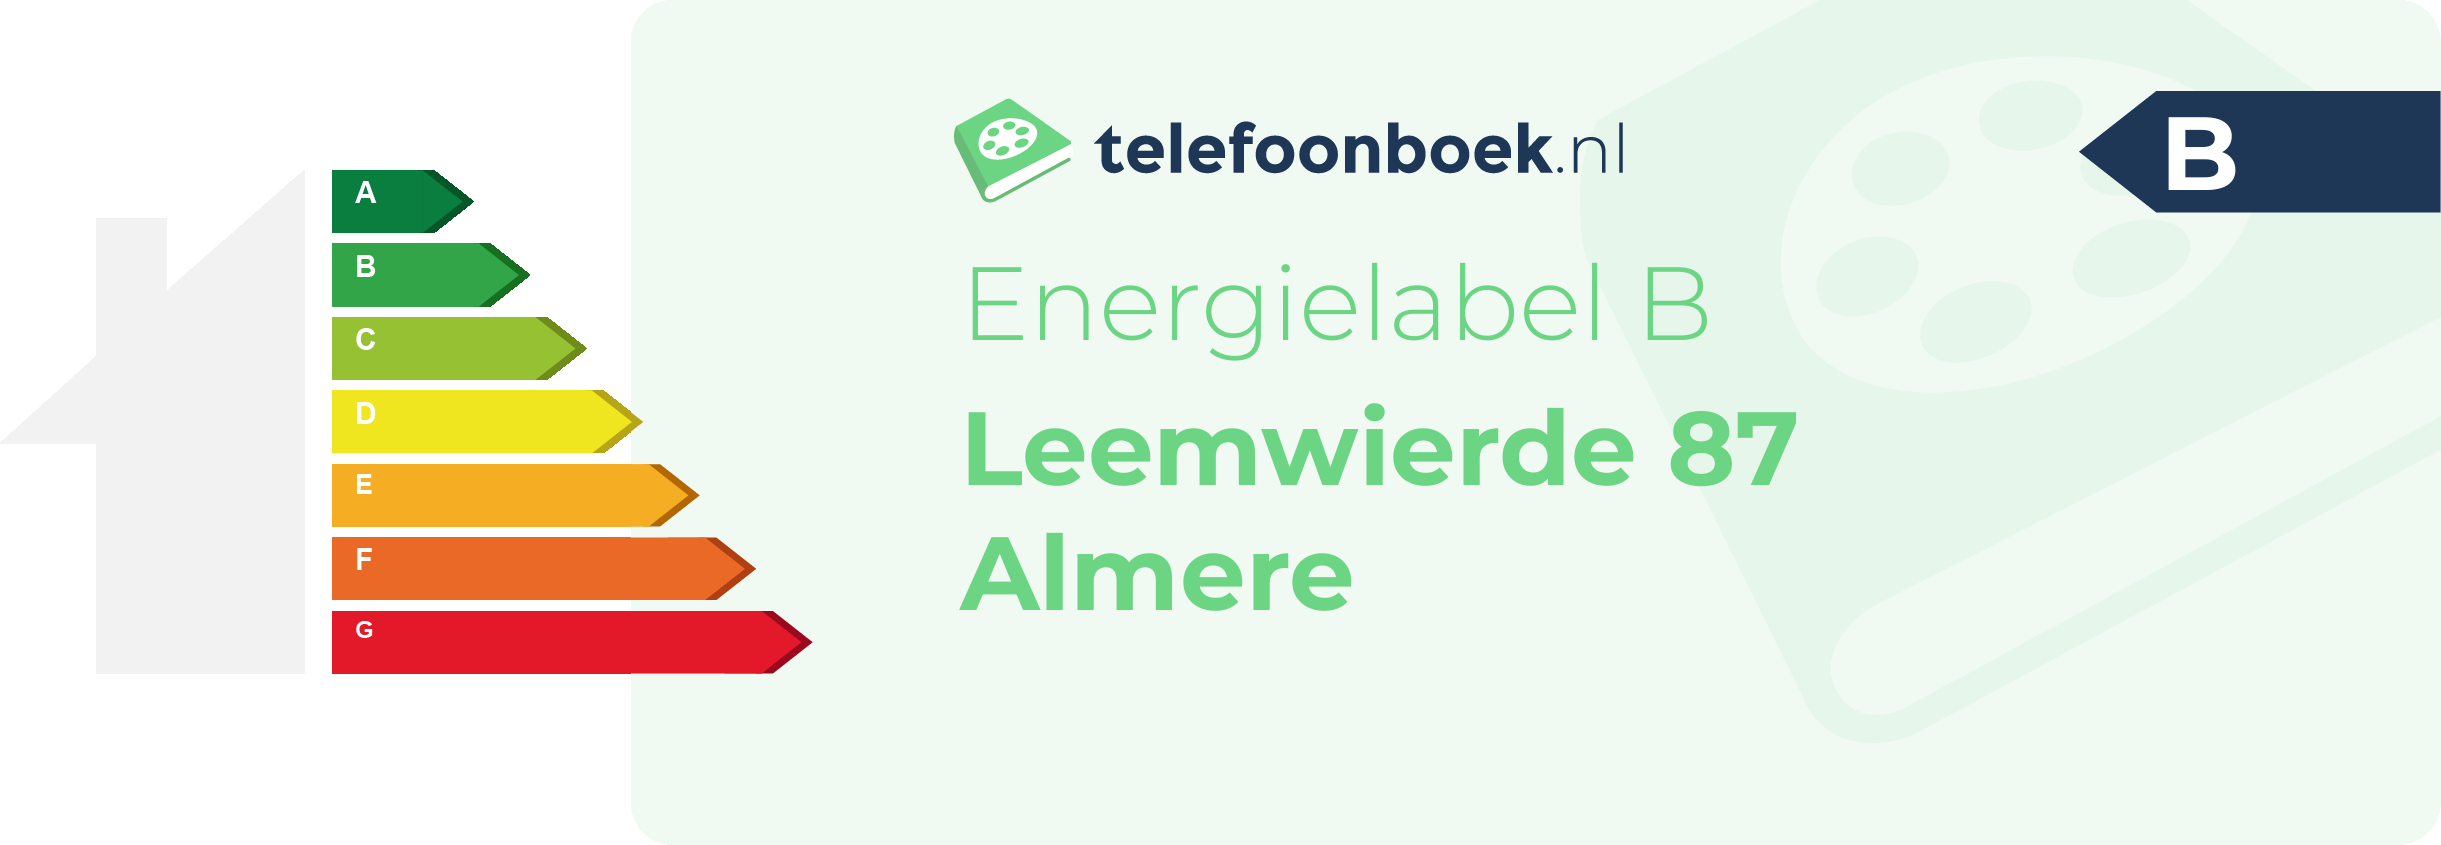 Energielabel Leemwierde 87 Almere